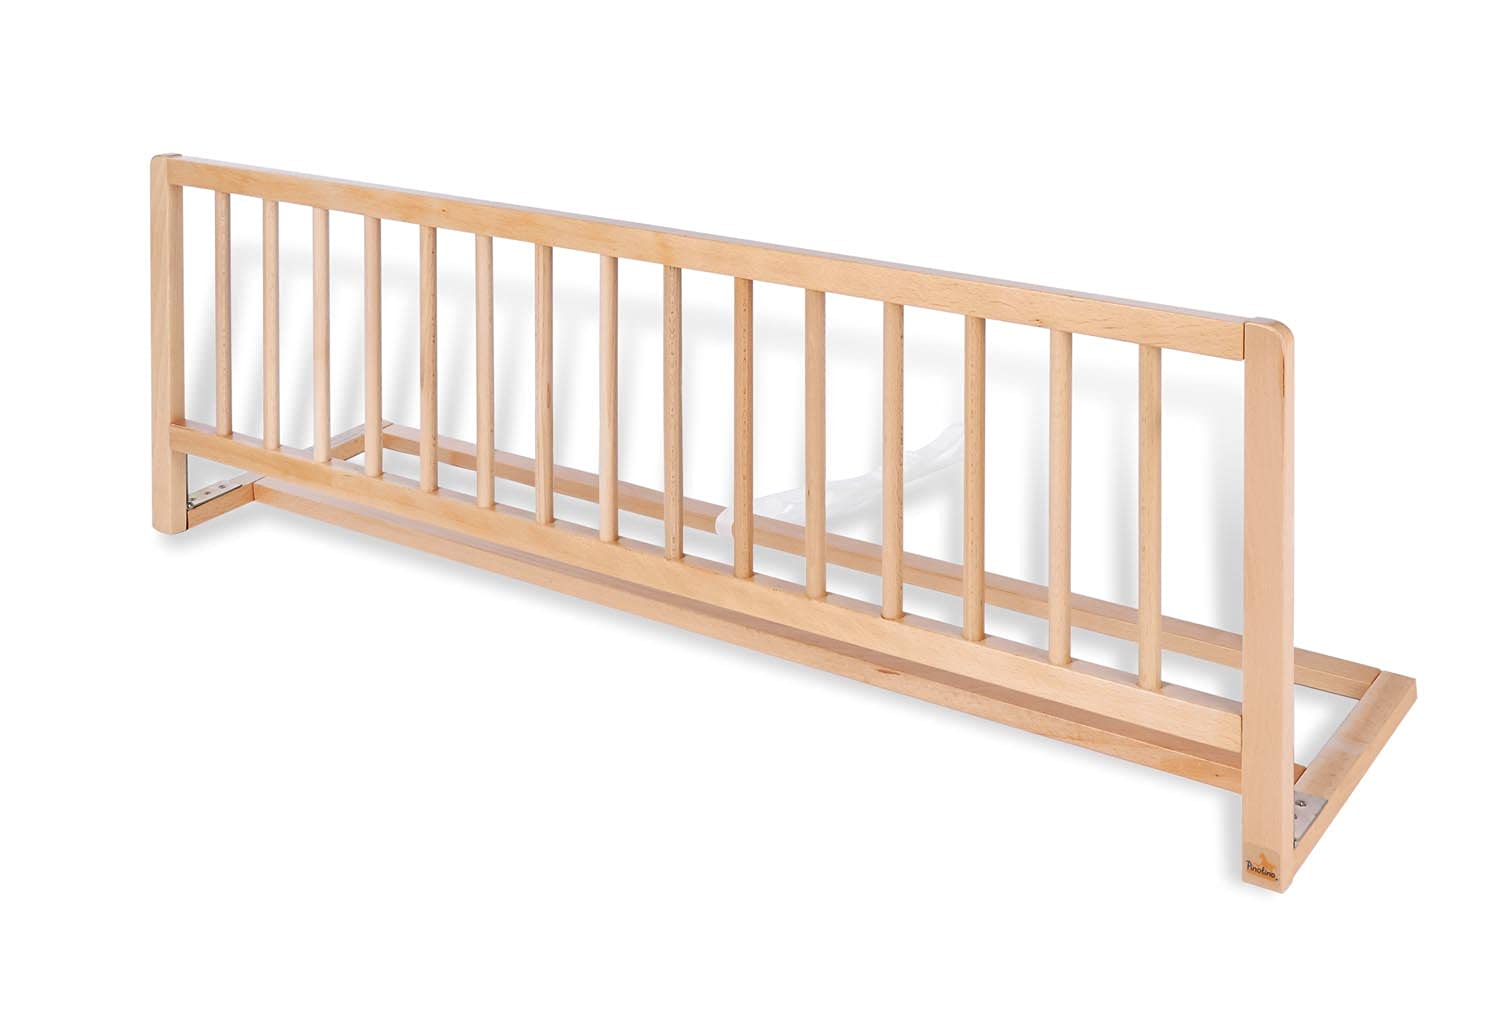 PINOLINO Rausfallschutz für Kinder aus Buche Massivholz, klappbares Bettgitter für Reisen, 115 x 40 x 32 cm, Bettschutzgitter für Kleinkinder und Babys, Natur